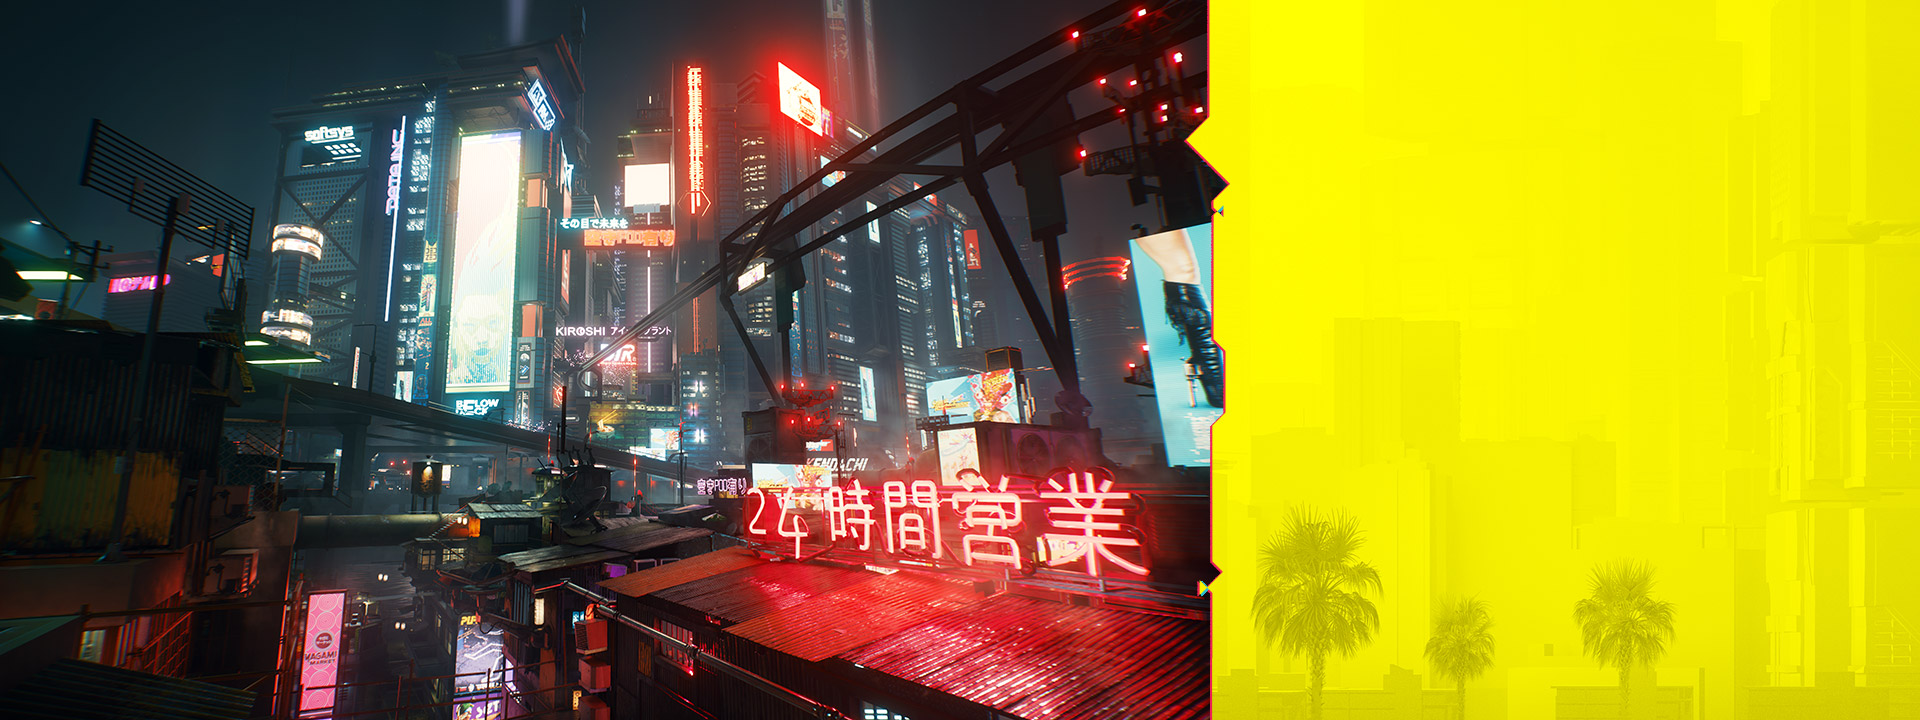 A Night City neonfeliratai világítanak az éjszakai ködös városkép előtt.